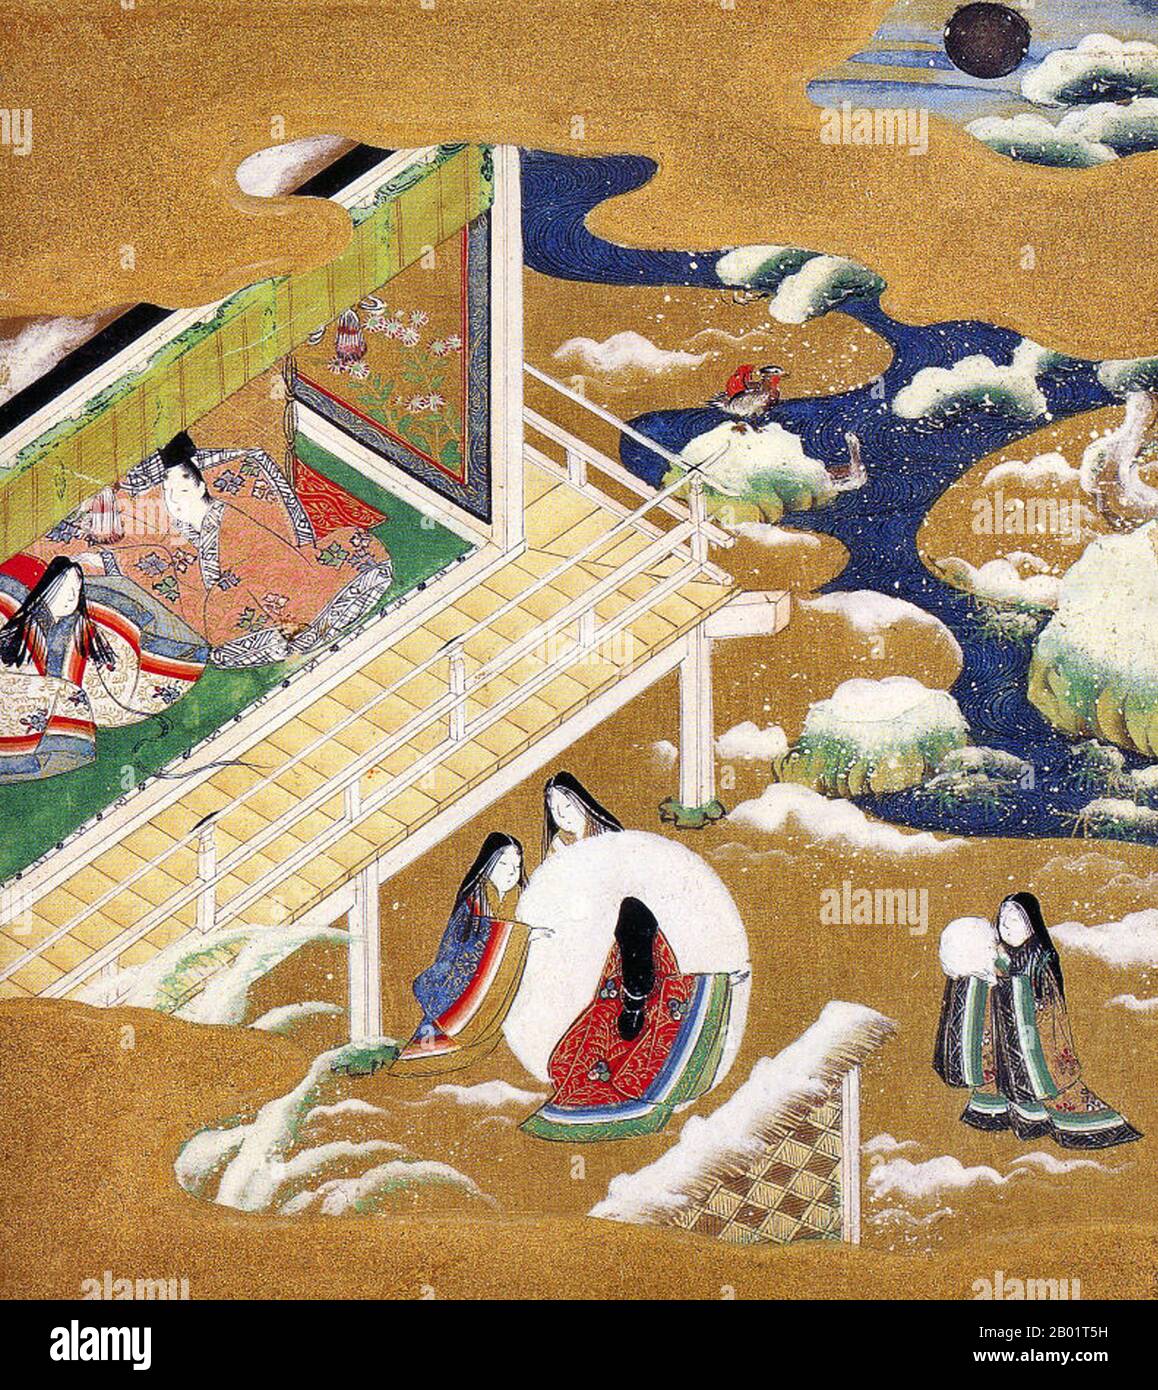 Japon : 'Chapitre 20 - Asagao' du 'Conte de Genji'. Peinture de Tosa Mitsuoki (23 octobre 1617 - 25 septembre 1691), fin du 17e siècle. Le Conte du Genji (Genji monogatari) est un ouvrage classique de la littérature japonaise attribué à la noble japonaise Murasaki Shikibu au début du 11e siècle, autour du pic de l'époque Heian. Il est parfois appelé le premier roman du monde, le premier roman moderne, le premier roman psychologique ou le premier roman encore considéré comme un classique. Notamment, le roman illustre également une représentation unique des moyens de subsistance des courtisans de l'époque de Heian. Banque D'Images